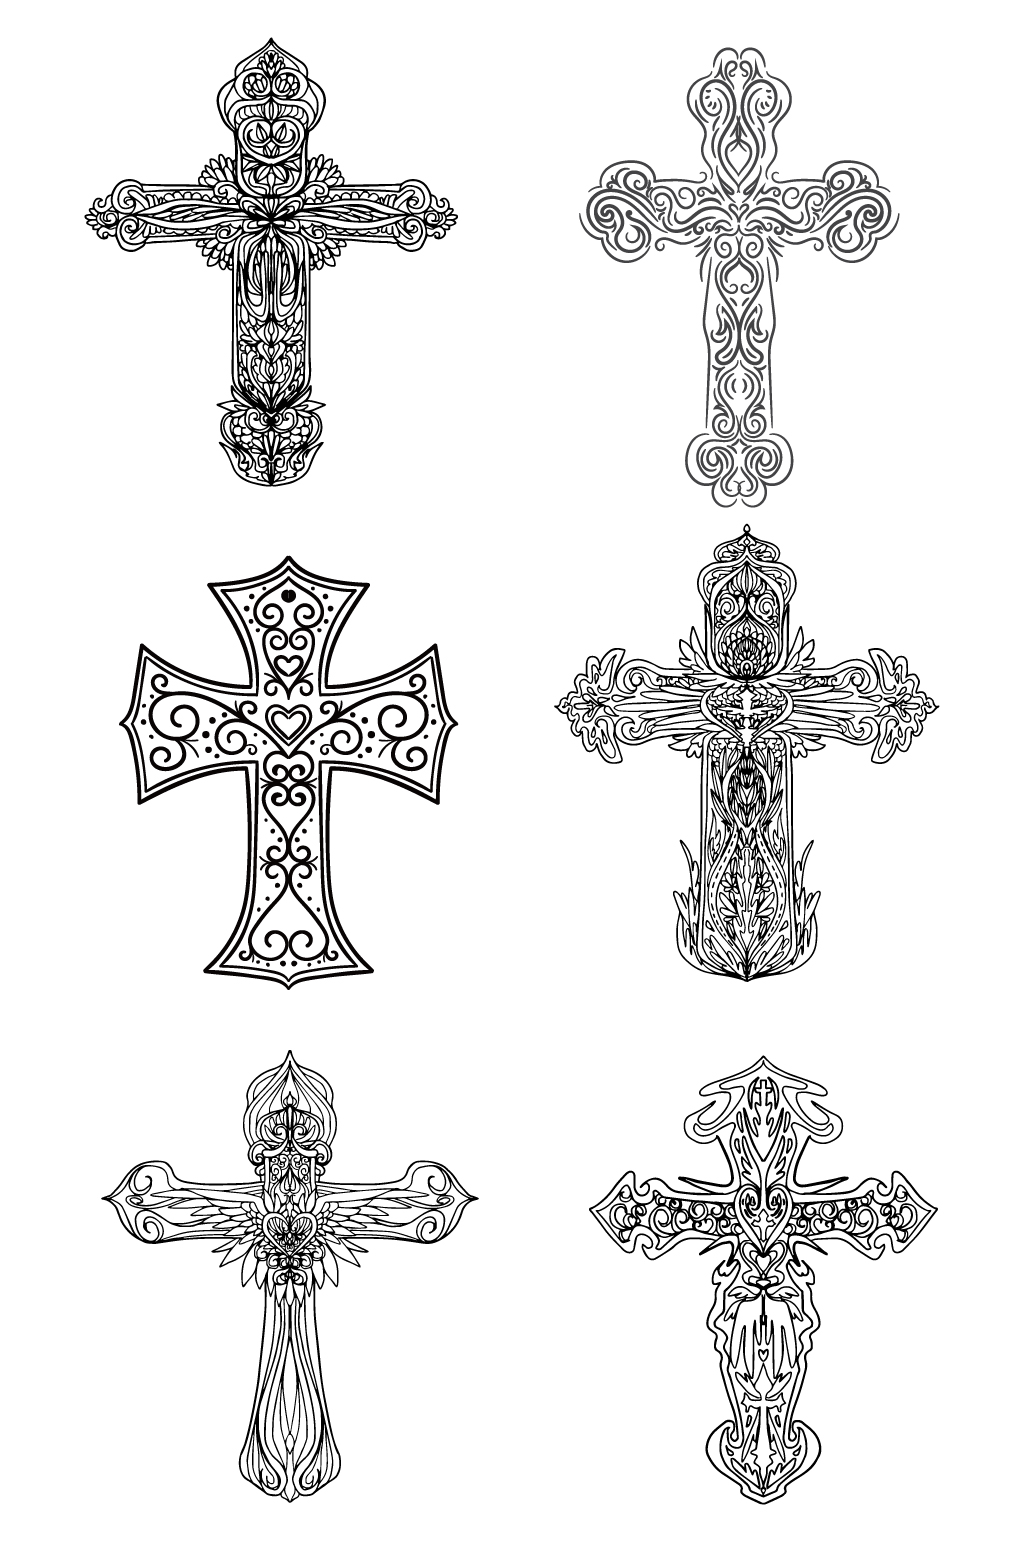 立体十字架画法图片